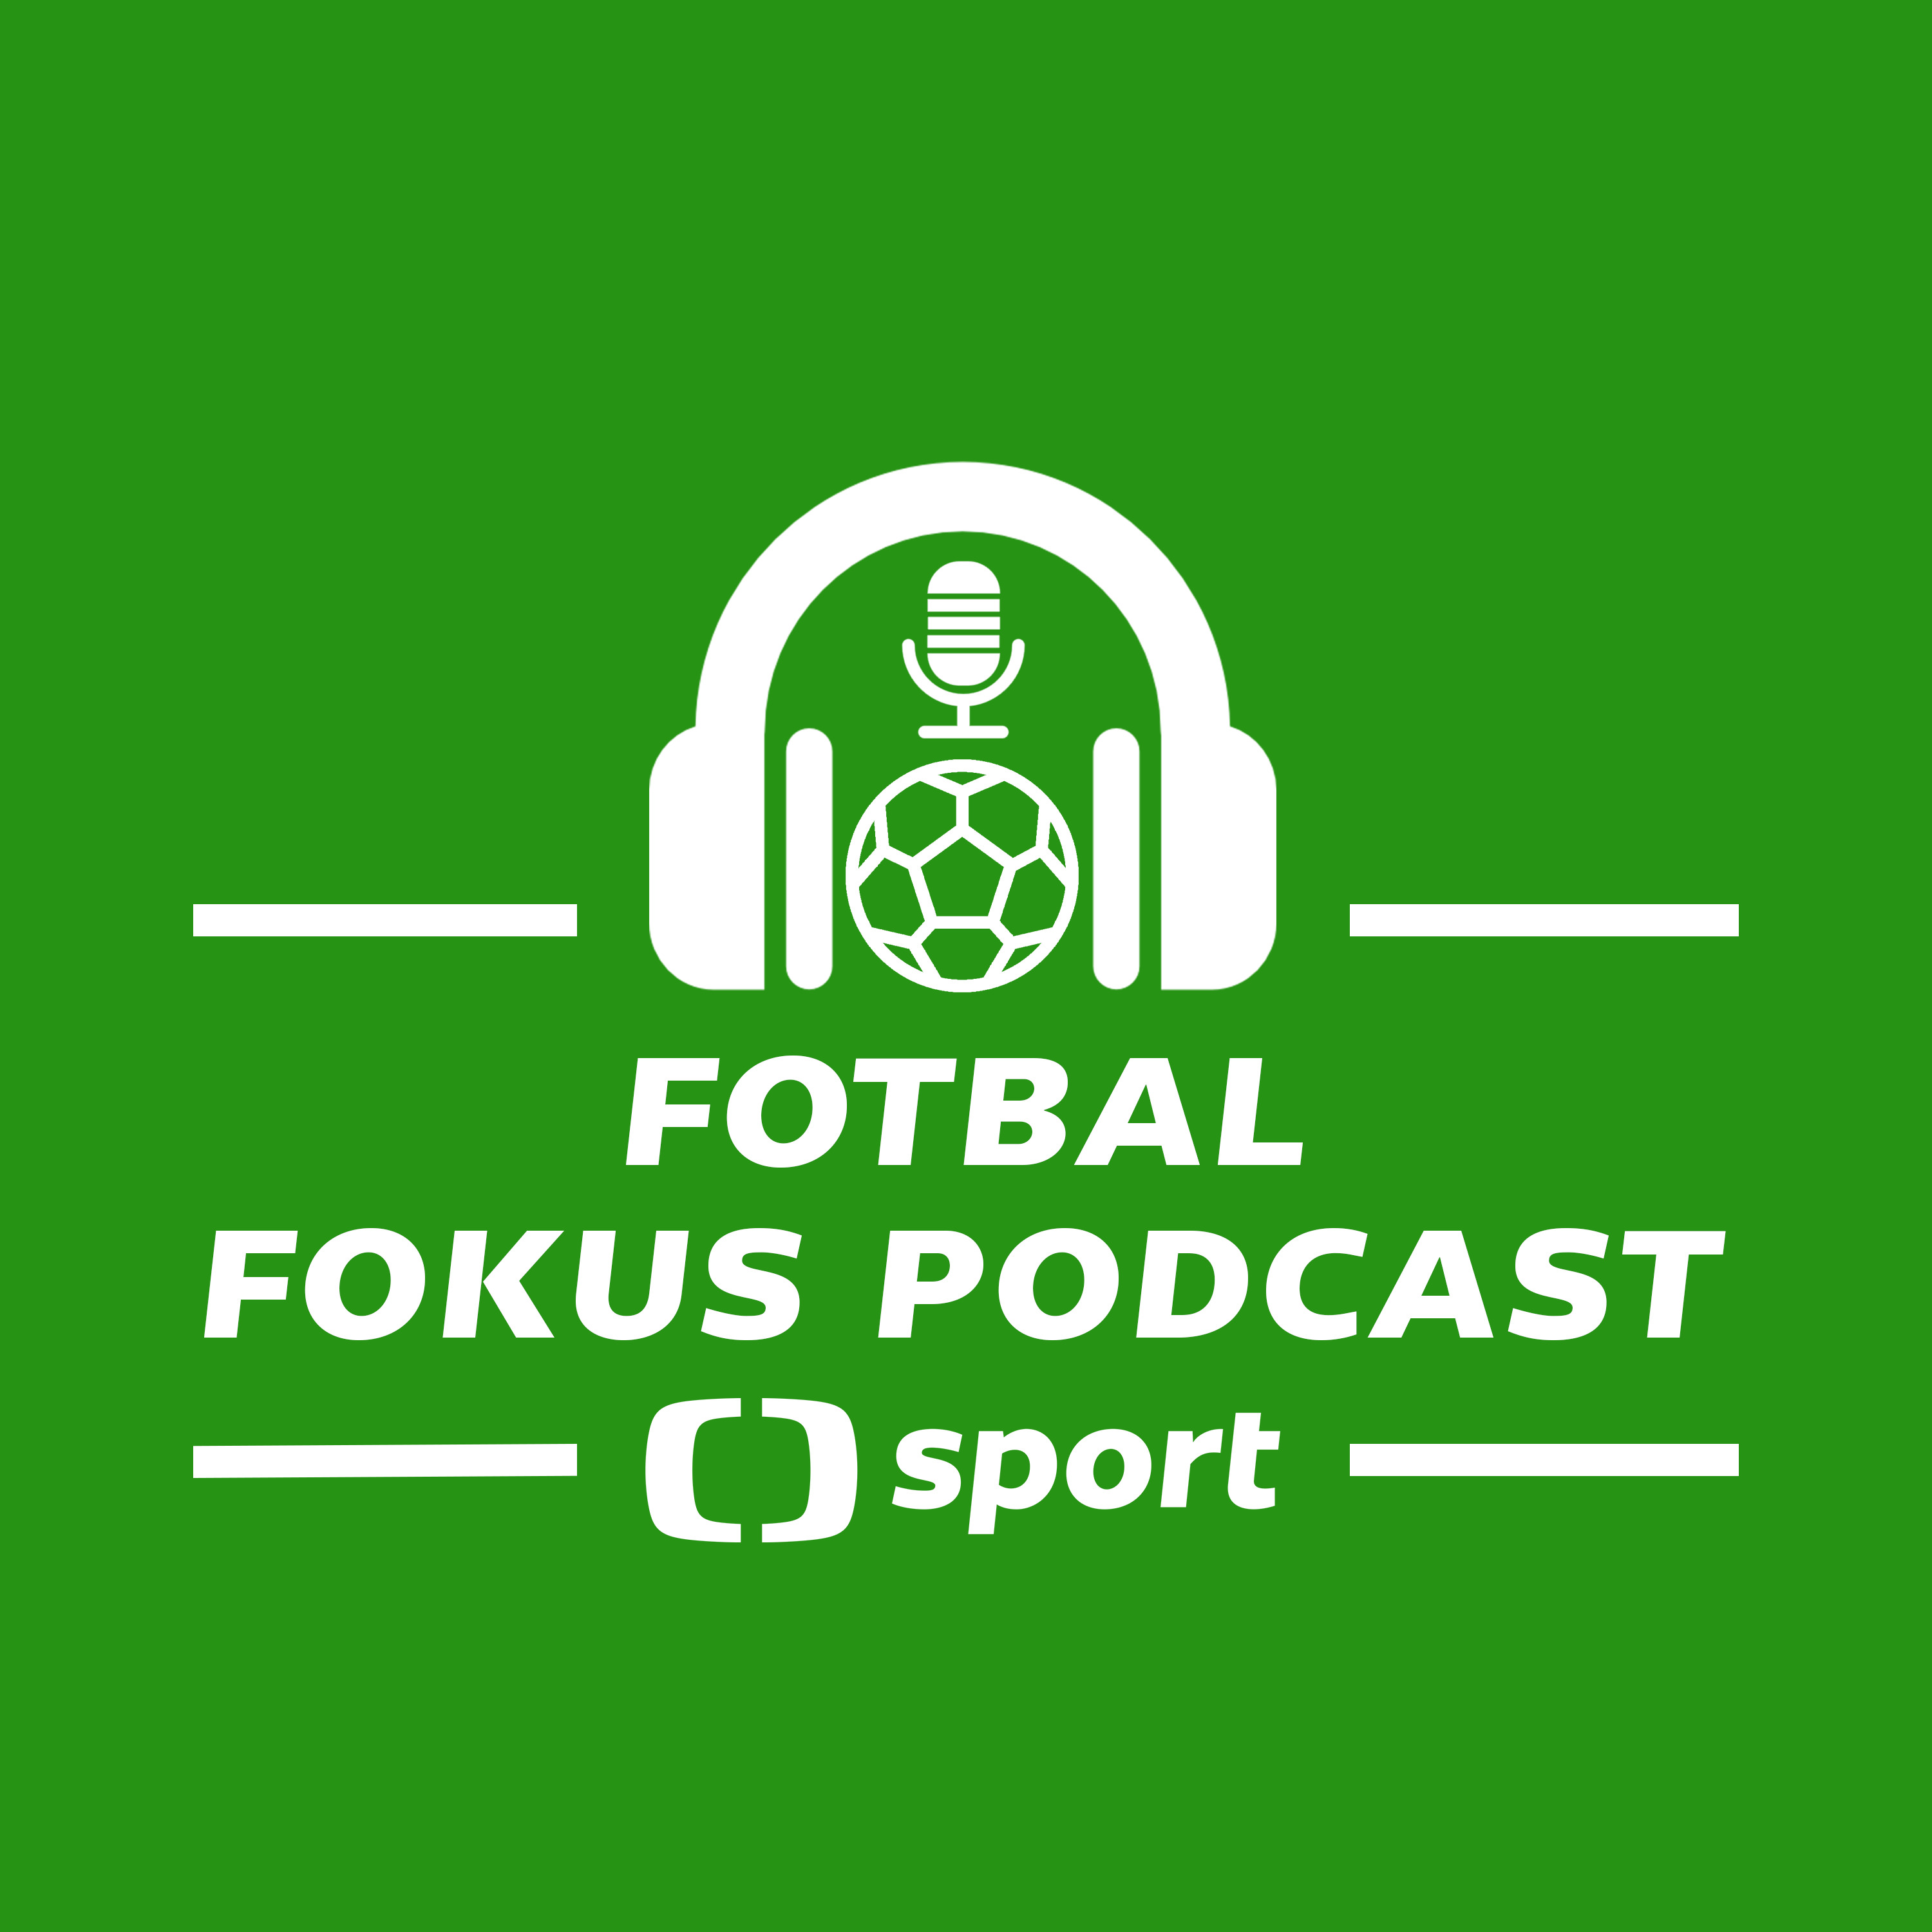 Fotbal fokus podcast: Loupež Jirky v Edenu, Koubek nad Trpišovským. Proč byl Hapal v ráži?